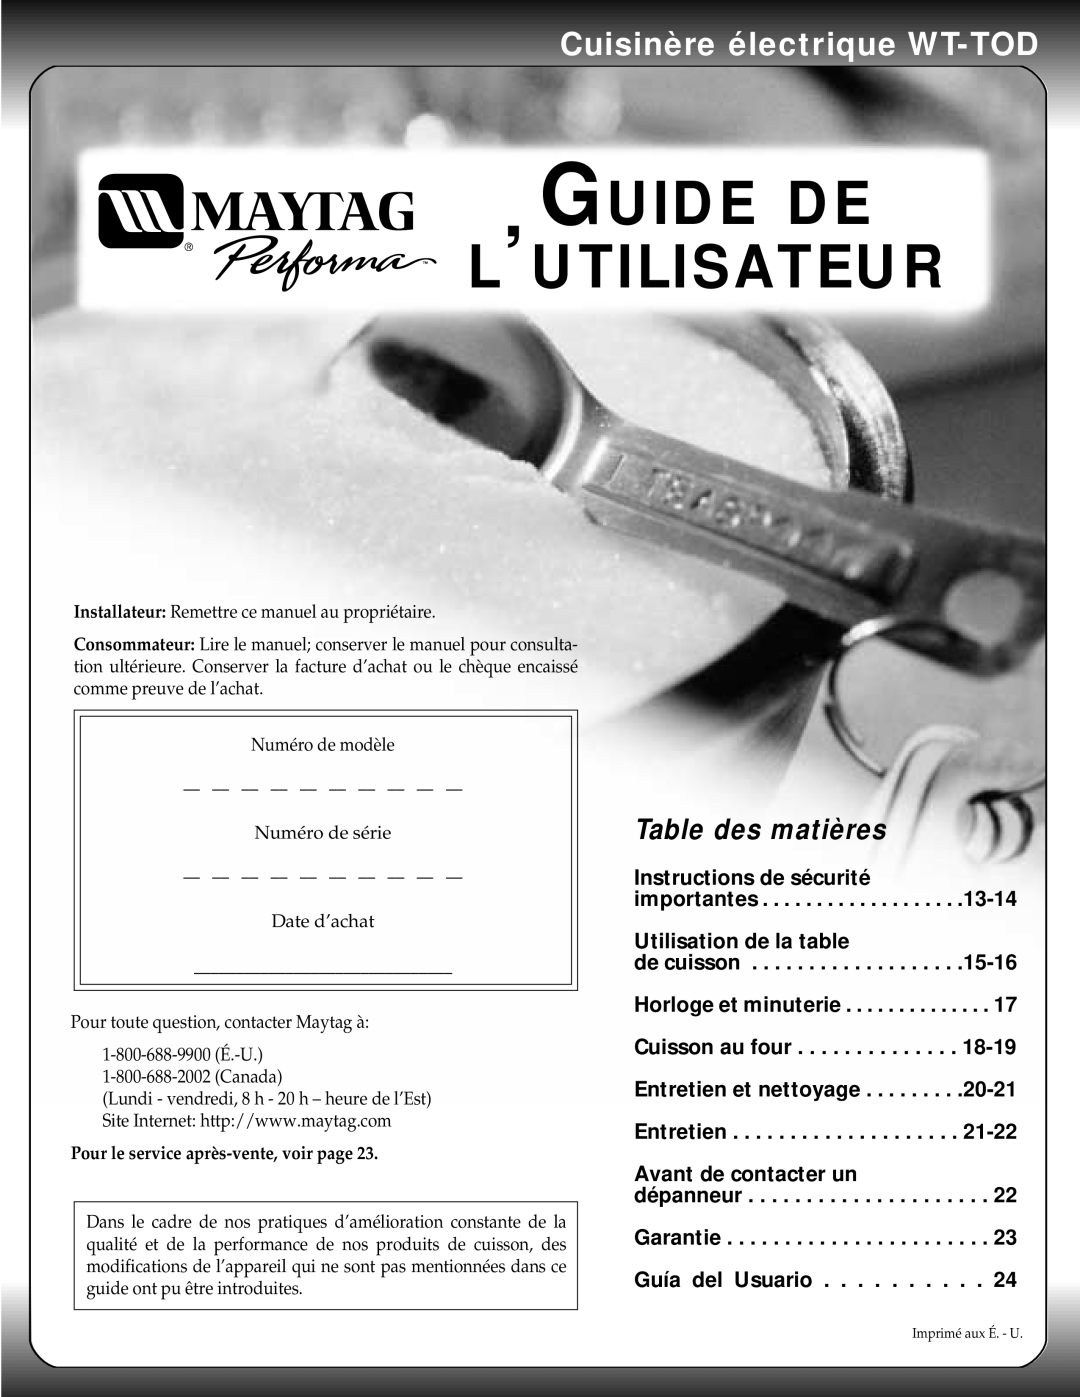 Maytag warranty Guide De L’Utilisateur, Cuisinère électrique WT-TOD, Table des matières, Avant de contacter un 